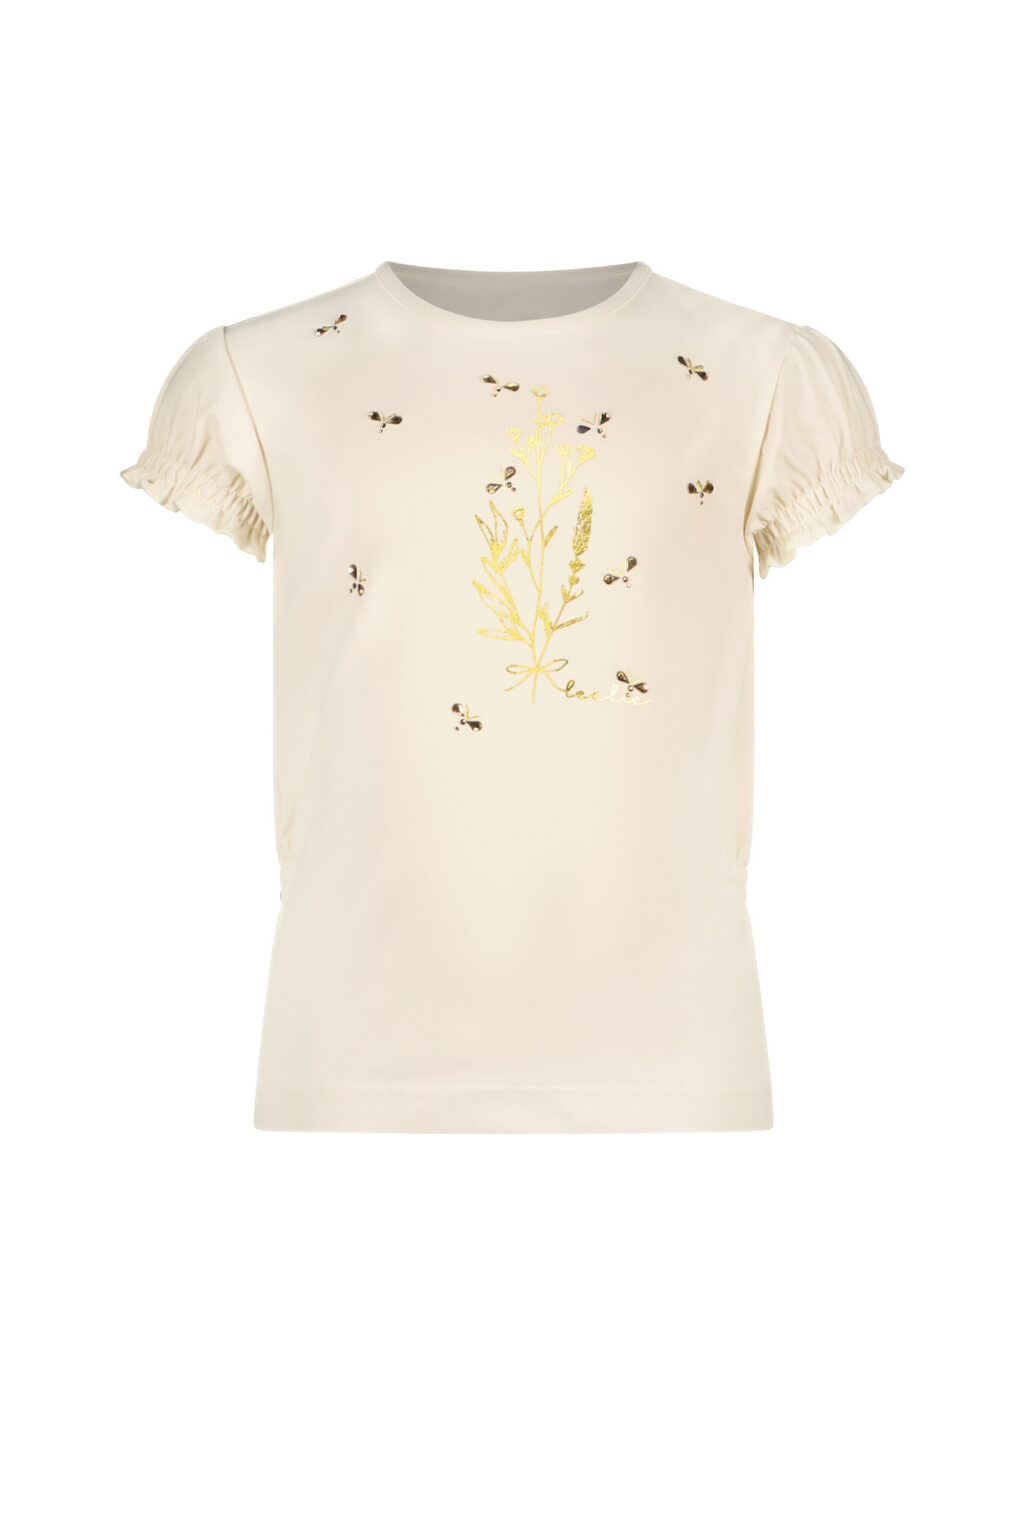 Le Chic Meisjes t-shirt bloemen en bijtjes - Nomsa - Pearled ivoor wit ~ Spinze.nl